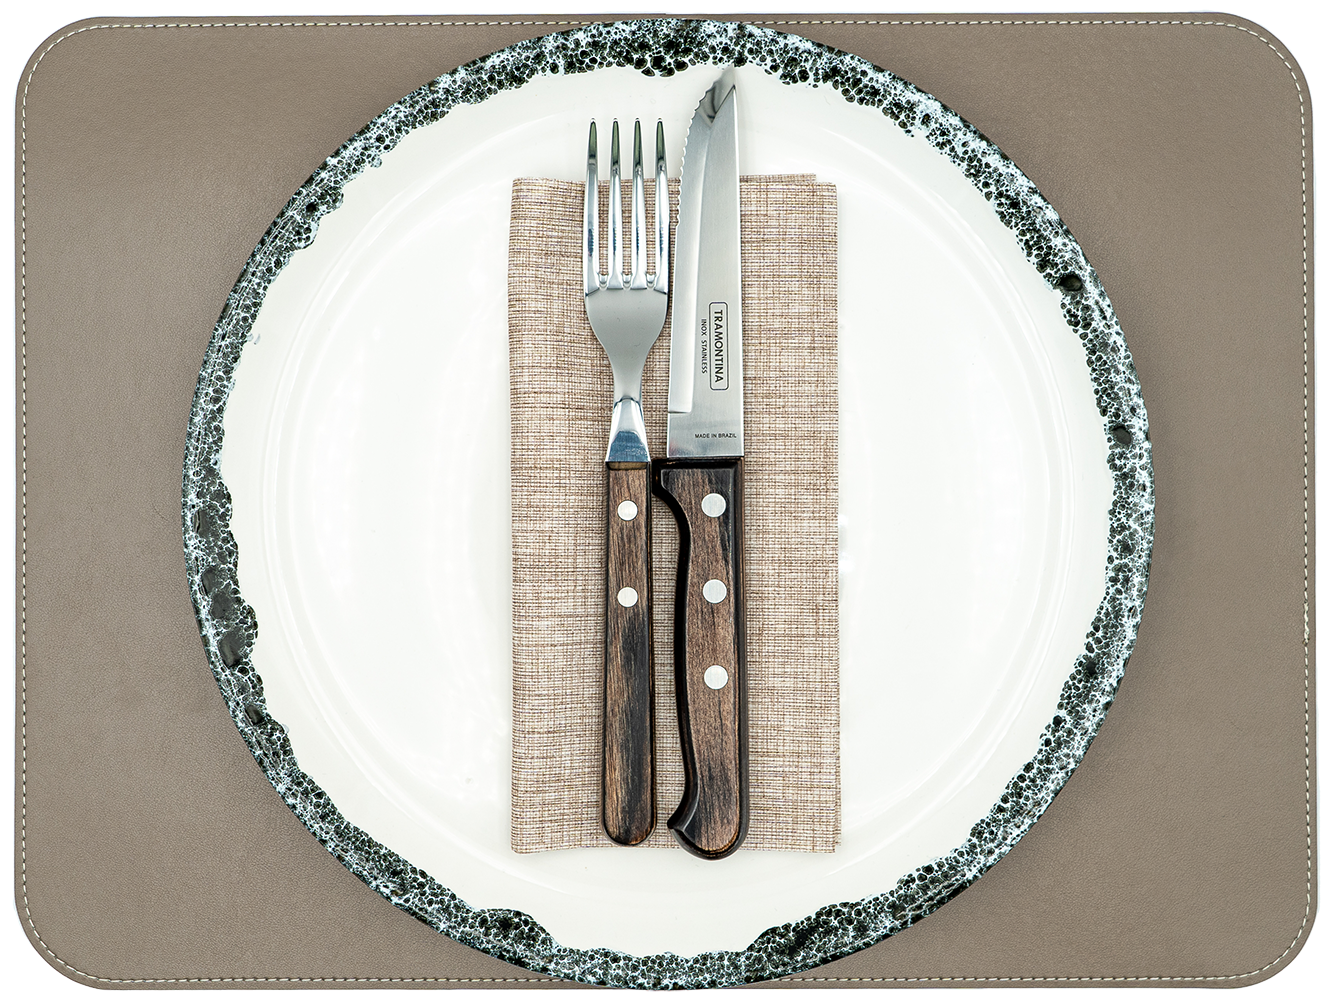 1 Tischset aus veganem PU Kunstleder - doppelseitig - 40 x 30 cm - Nutriabraun / Kastanie